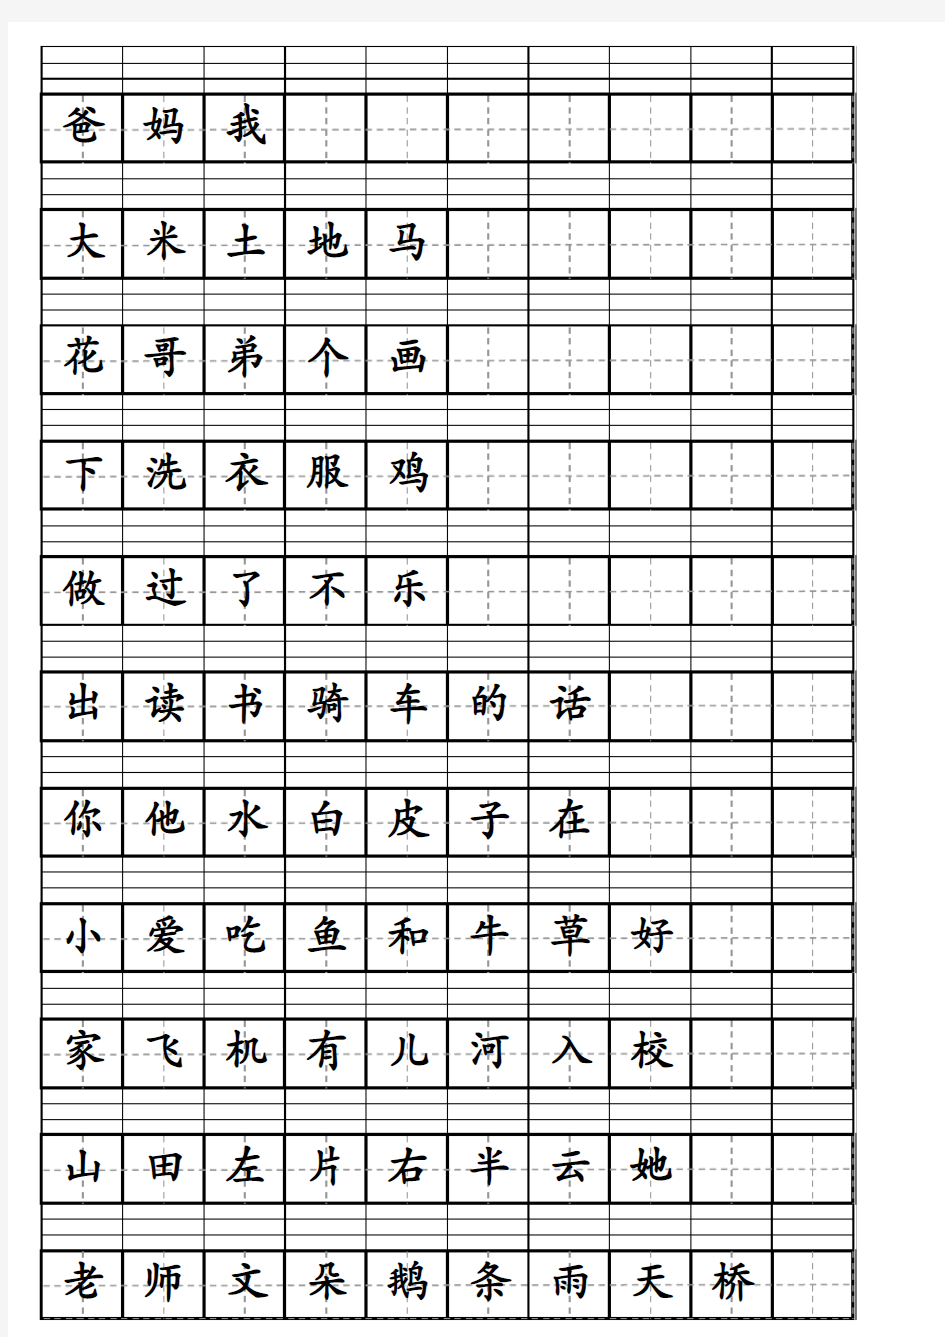 一年级上生字表汉语拼音田字格